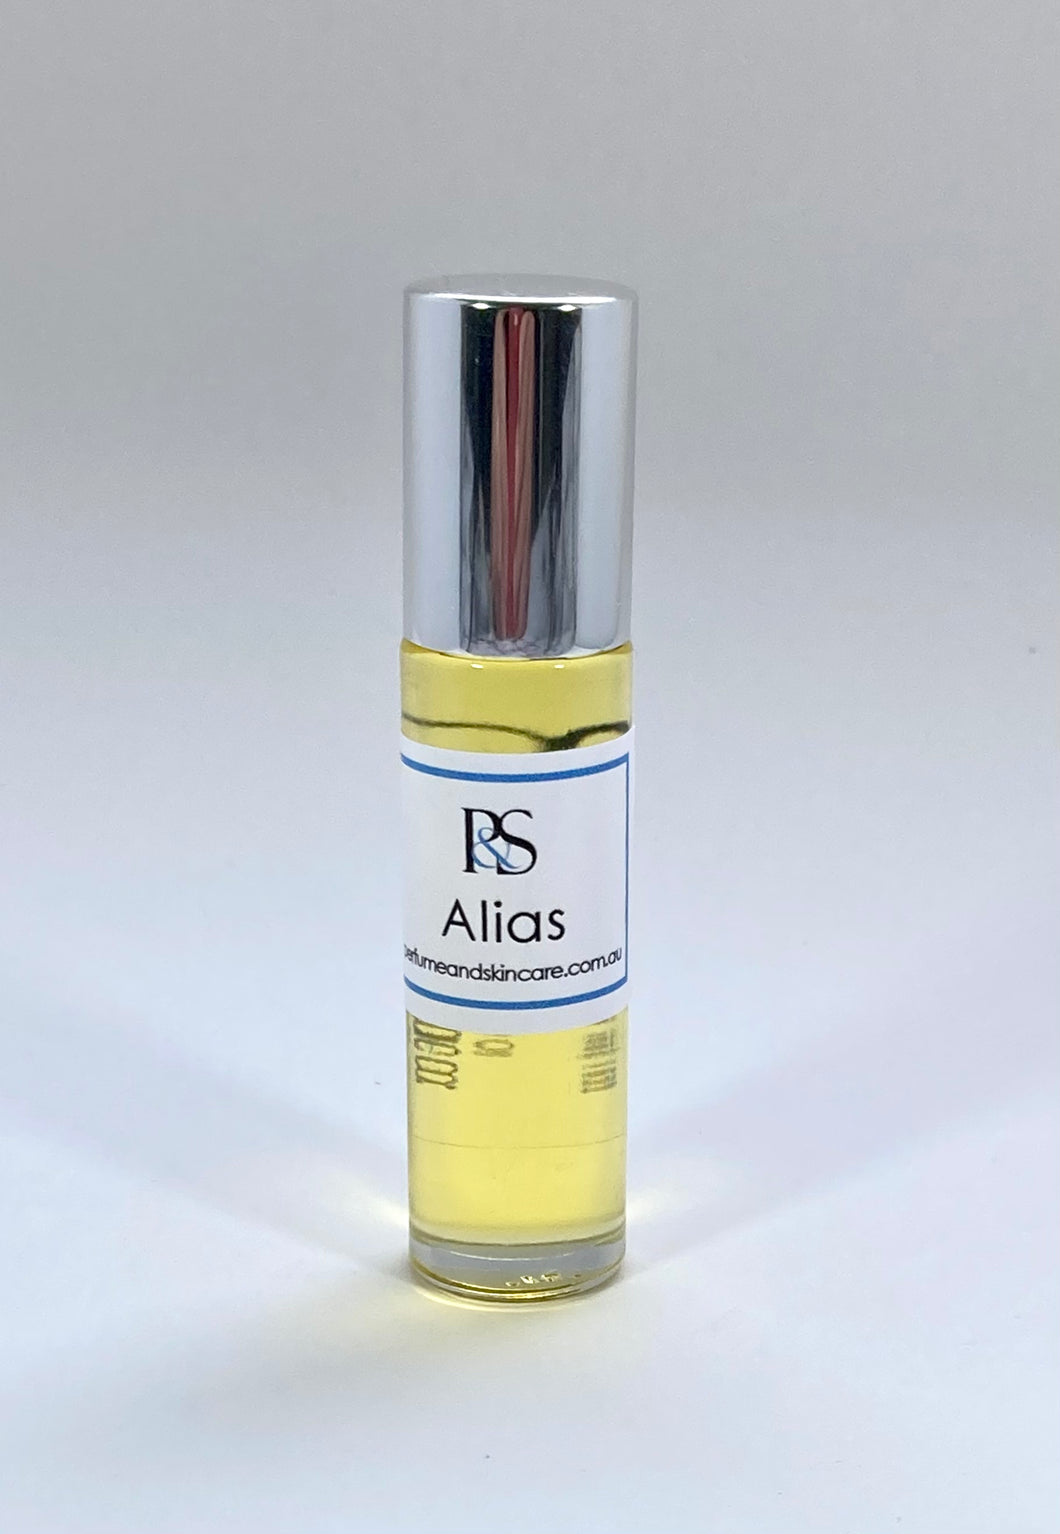 Alias Roll On Perfume 10ml